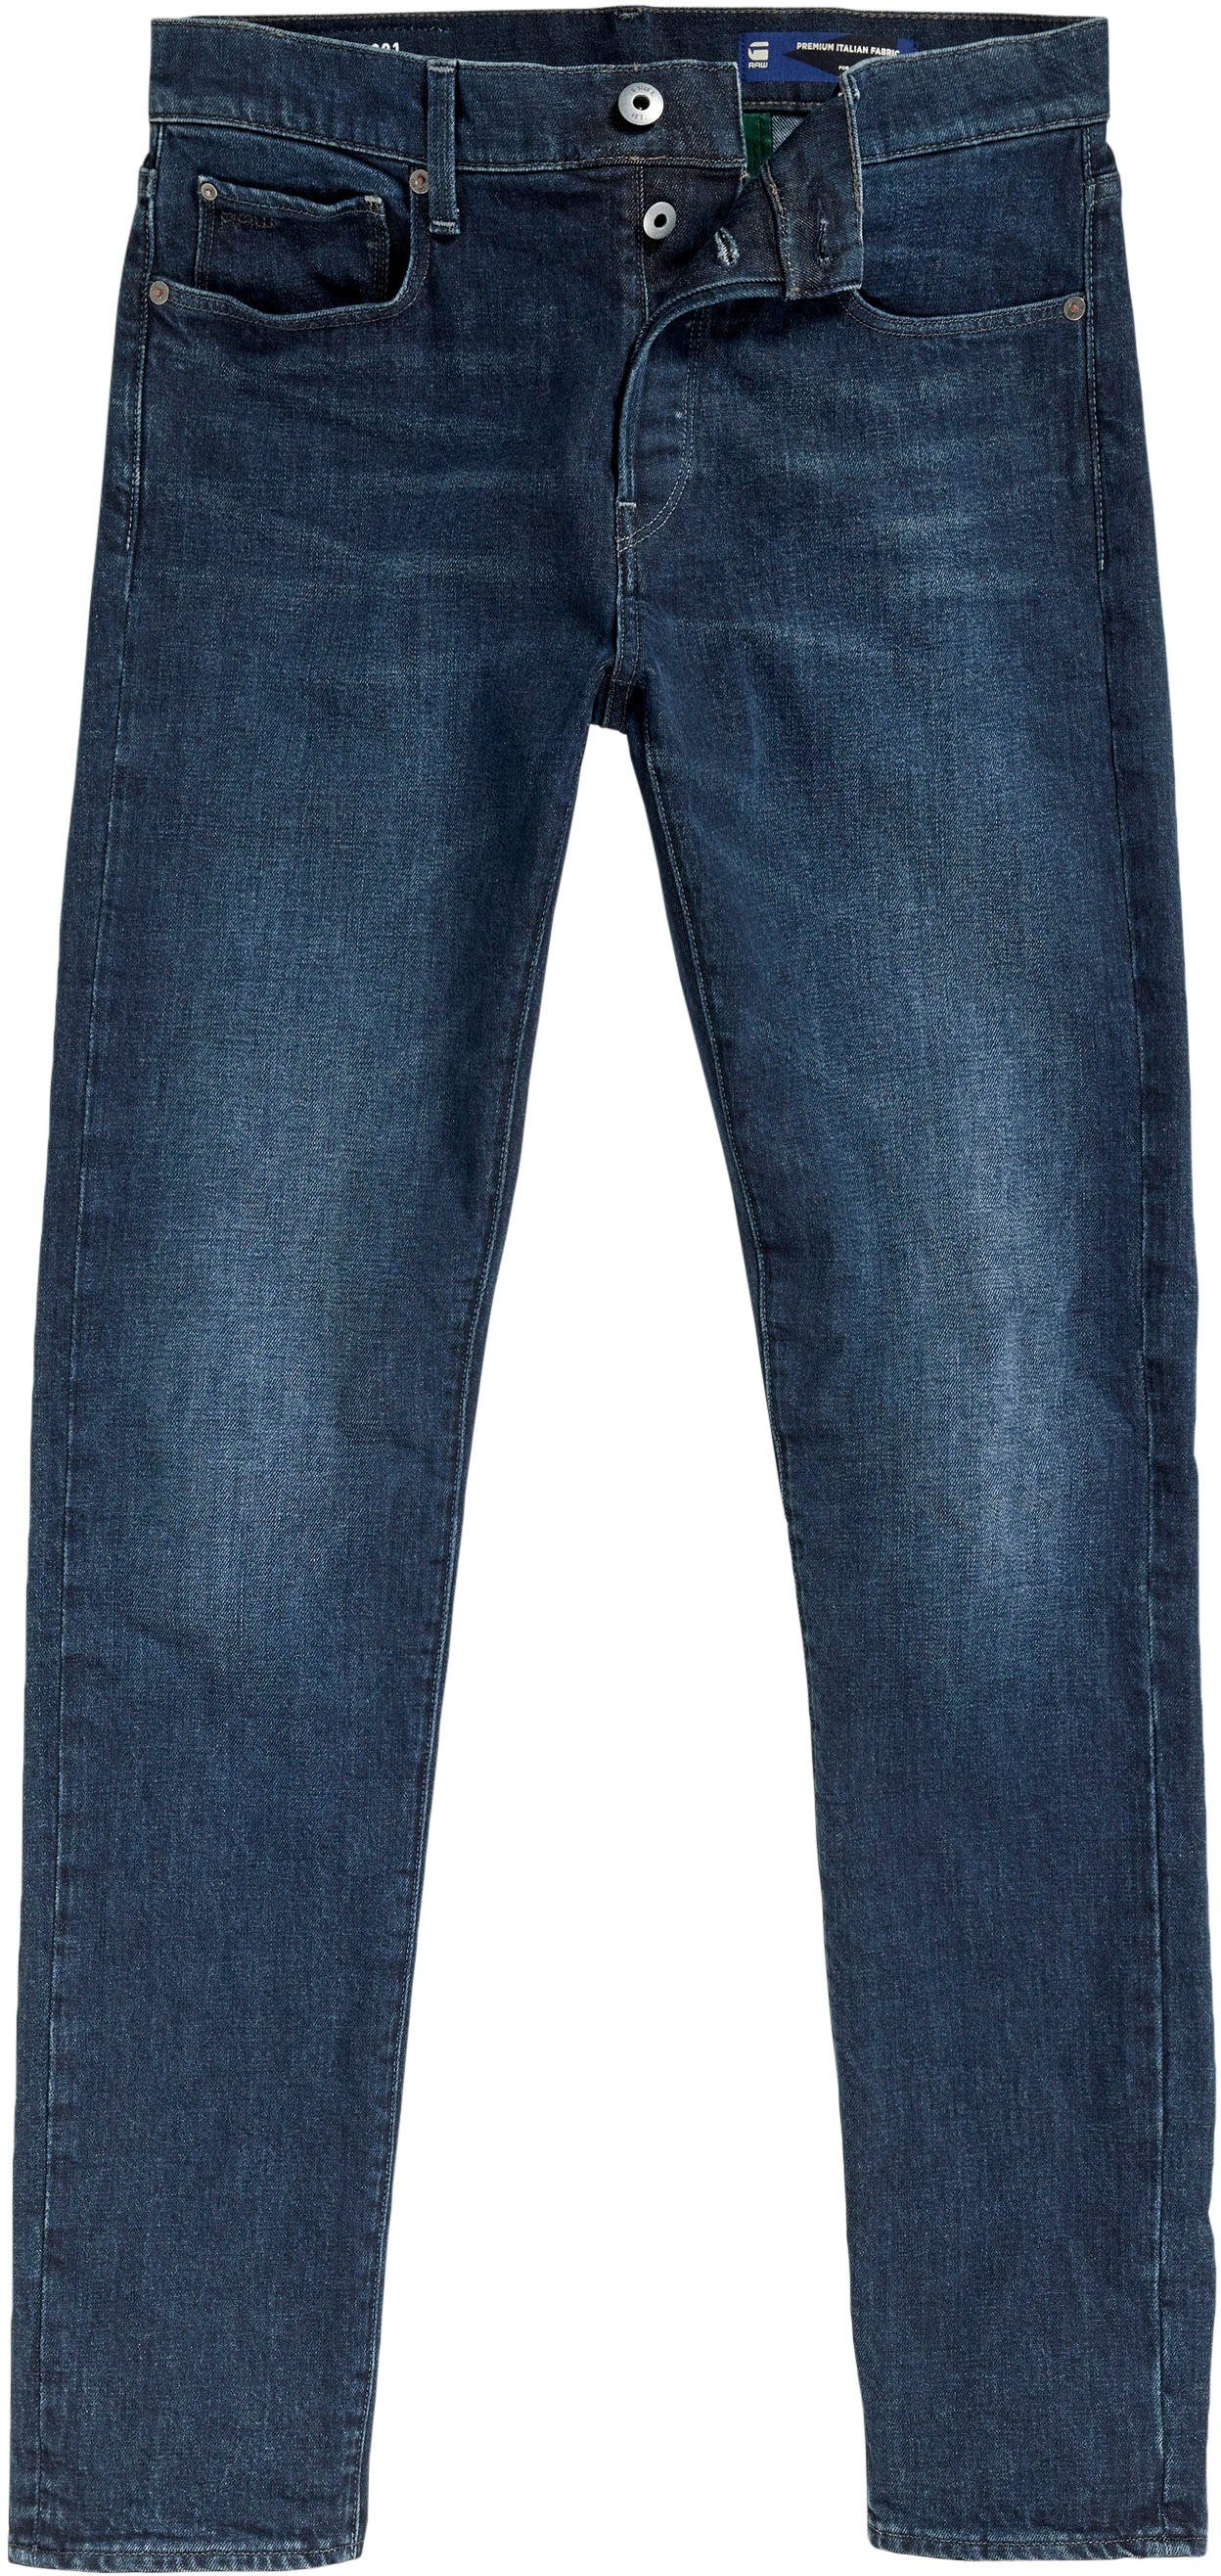 worn G-Star teal Slim Slim-fit-Jeans in RAW 3301 deep